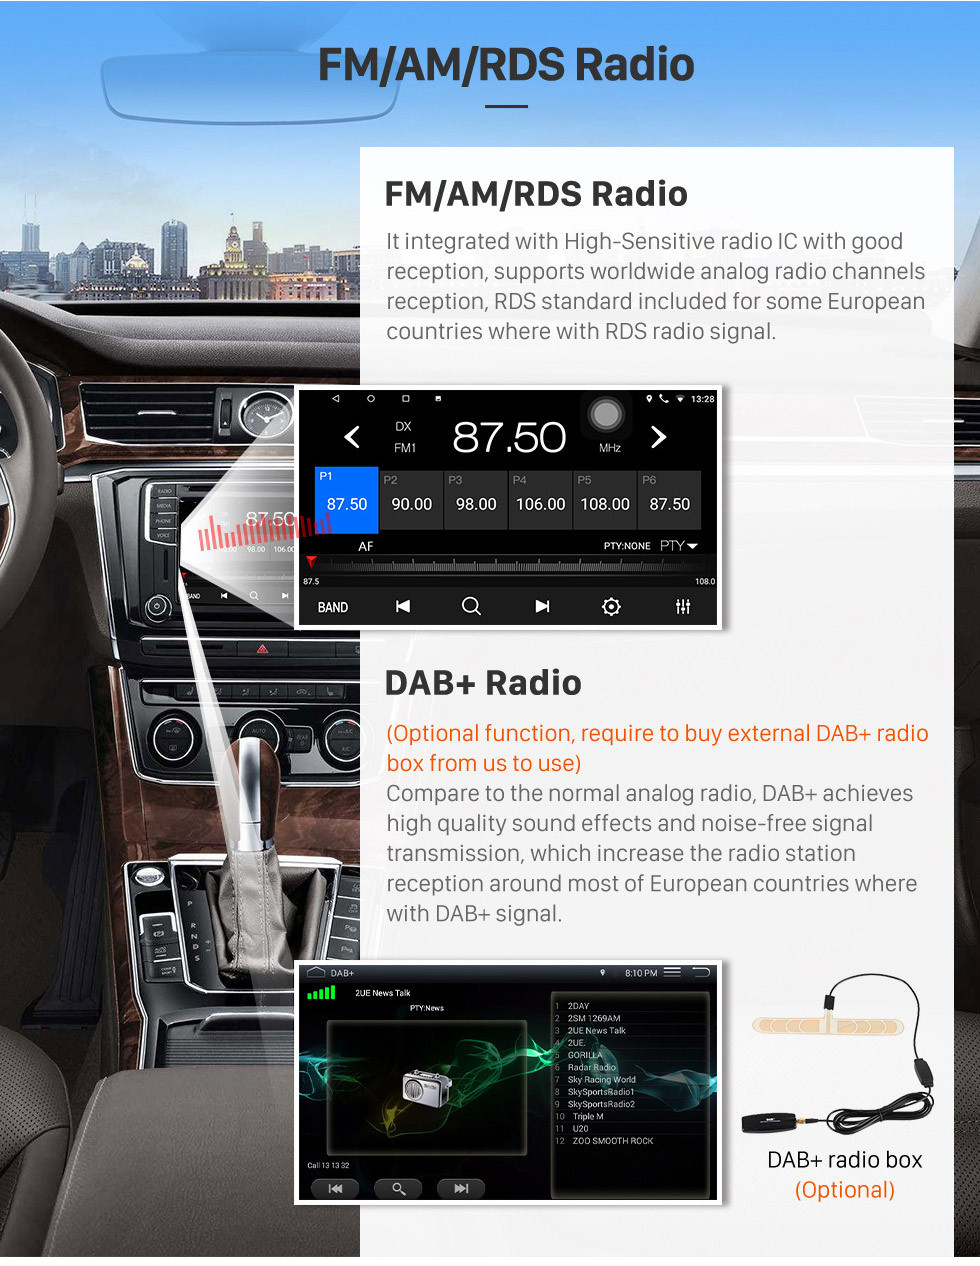 Seicane Radio de navegación GPS Android 9,1 pulgadas para 2012-2017 Renault Kwid con soporte para pantalla táctil Bluetooth USB HD Carplay DVR OBD